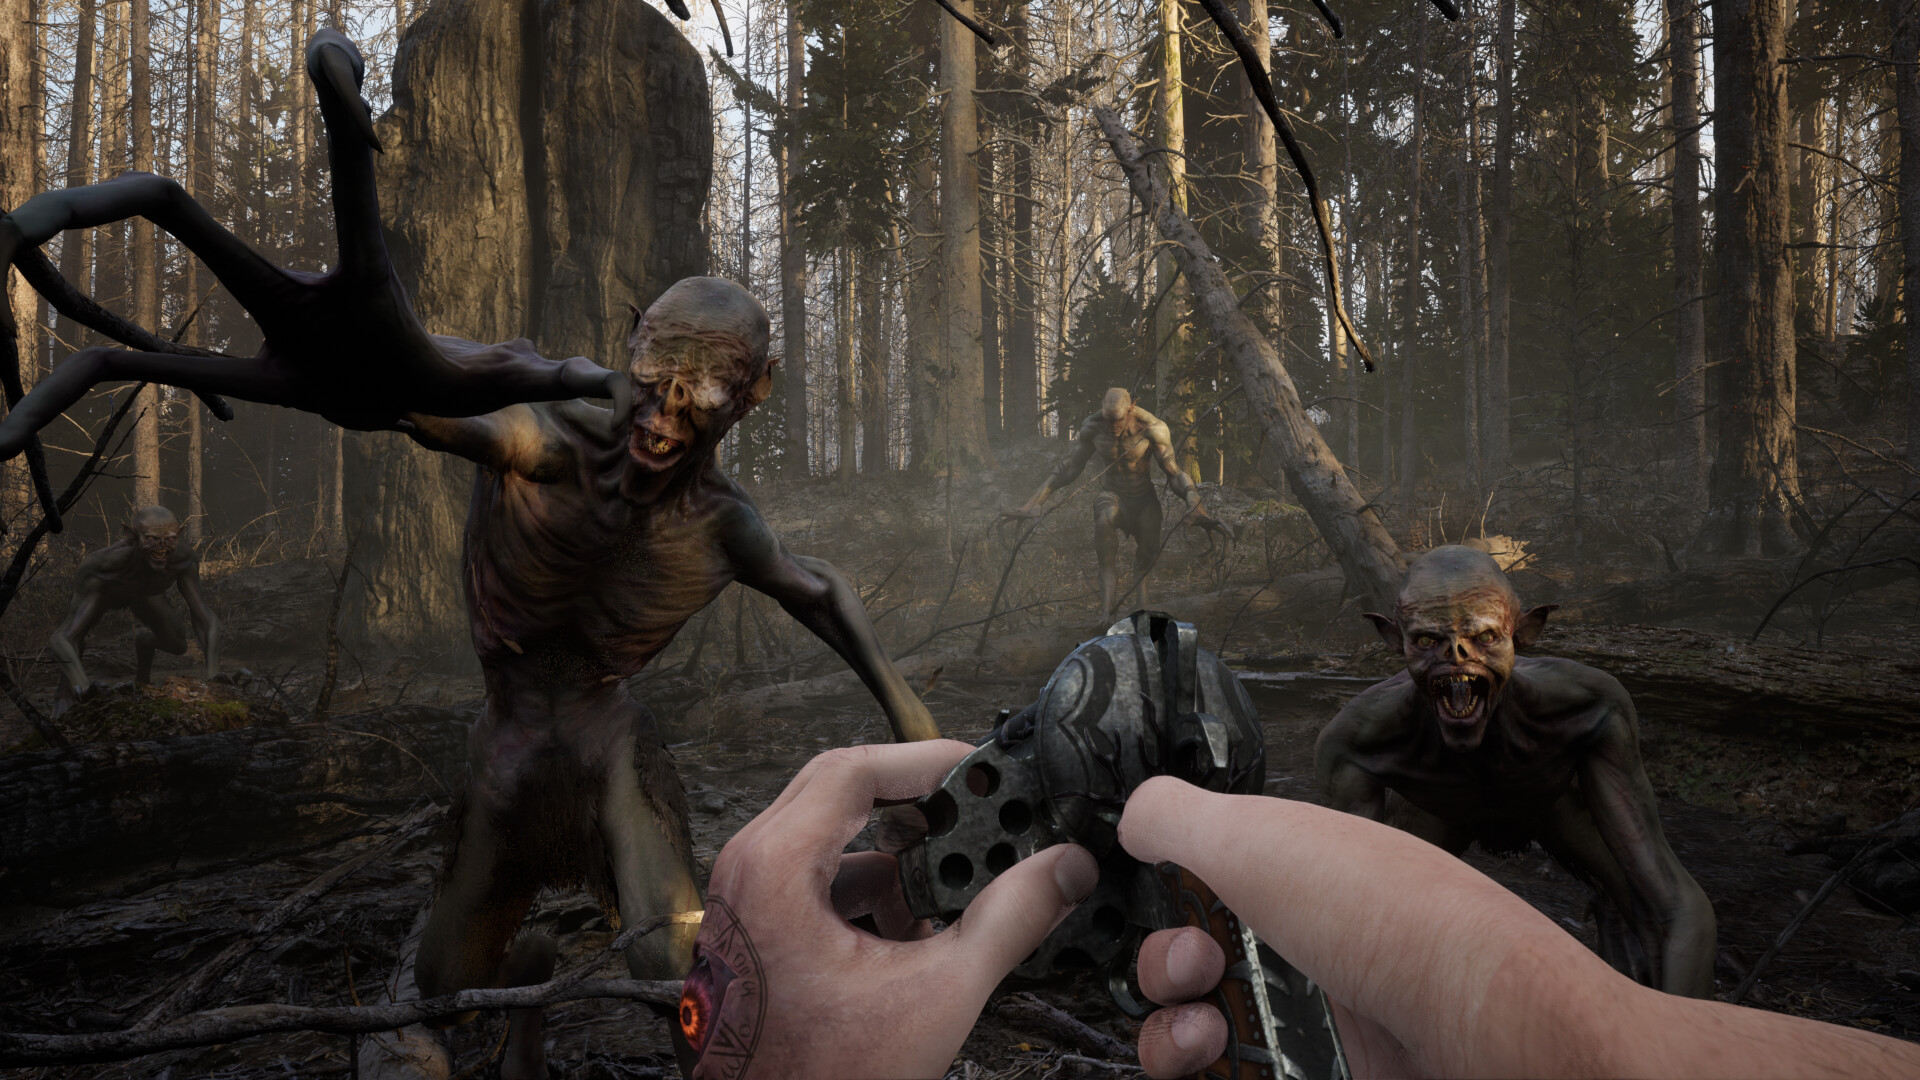  5 x news shifts 625,00 £ FALSE FALSE FALSE FALSE : Le joueur charge une révolution alors que deux créatures gobelines se précipitent vers lui dans une zone forestière effrayante